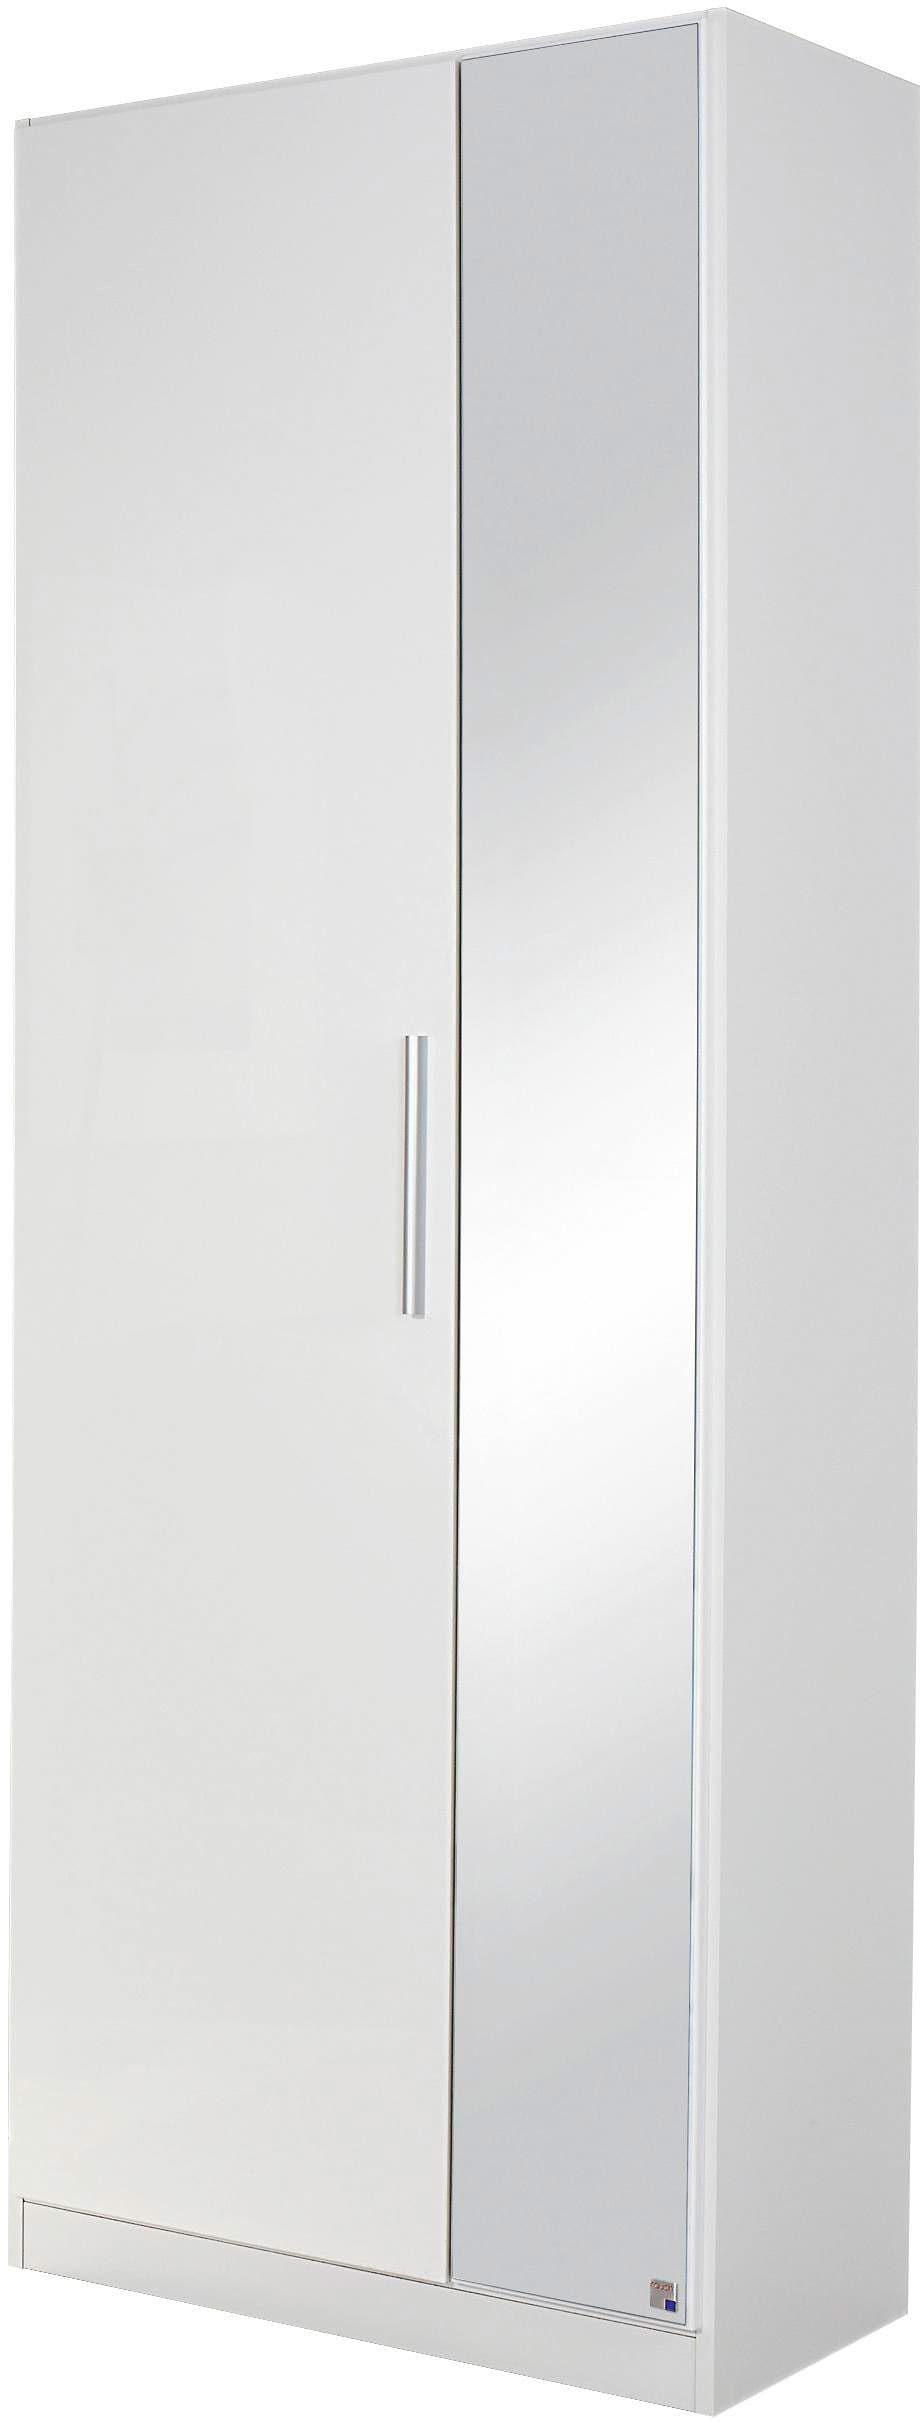 rauch Garderobenschrank »Minosa«, mit Spiegel, cm Breite 69 kaufen